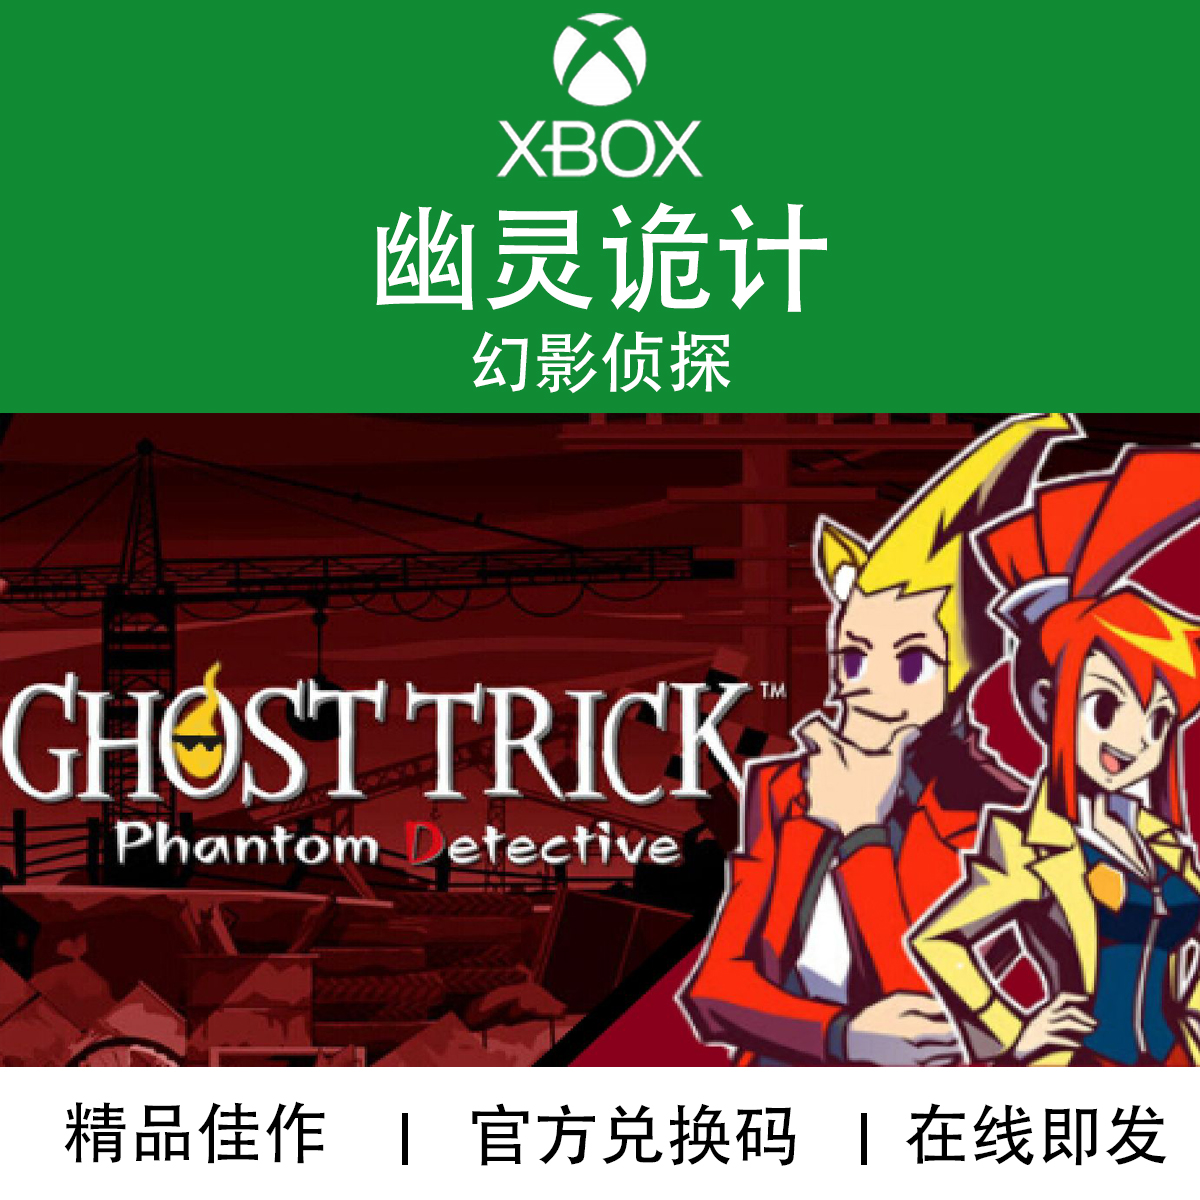 XBOX游戏 幽灵诡计 幻影侦探 Ghost Trick 官方数字兑换码/代购